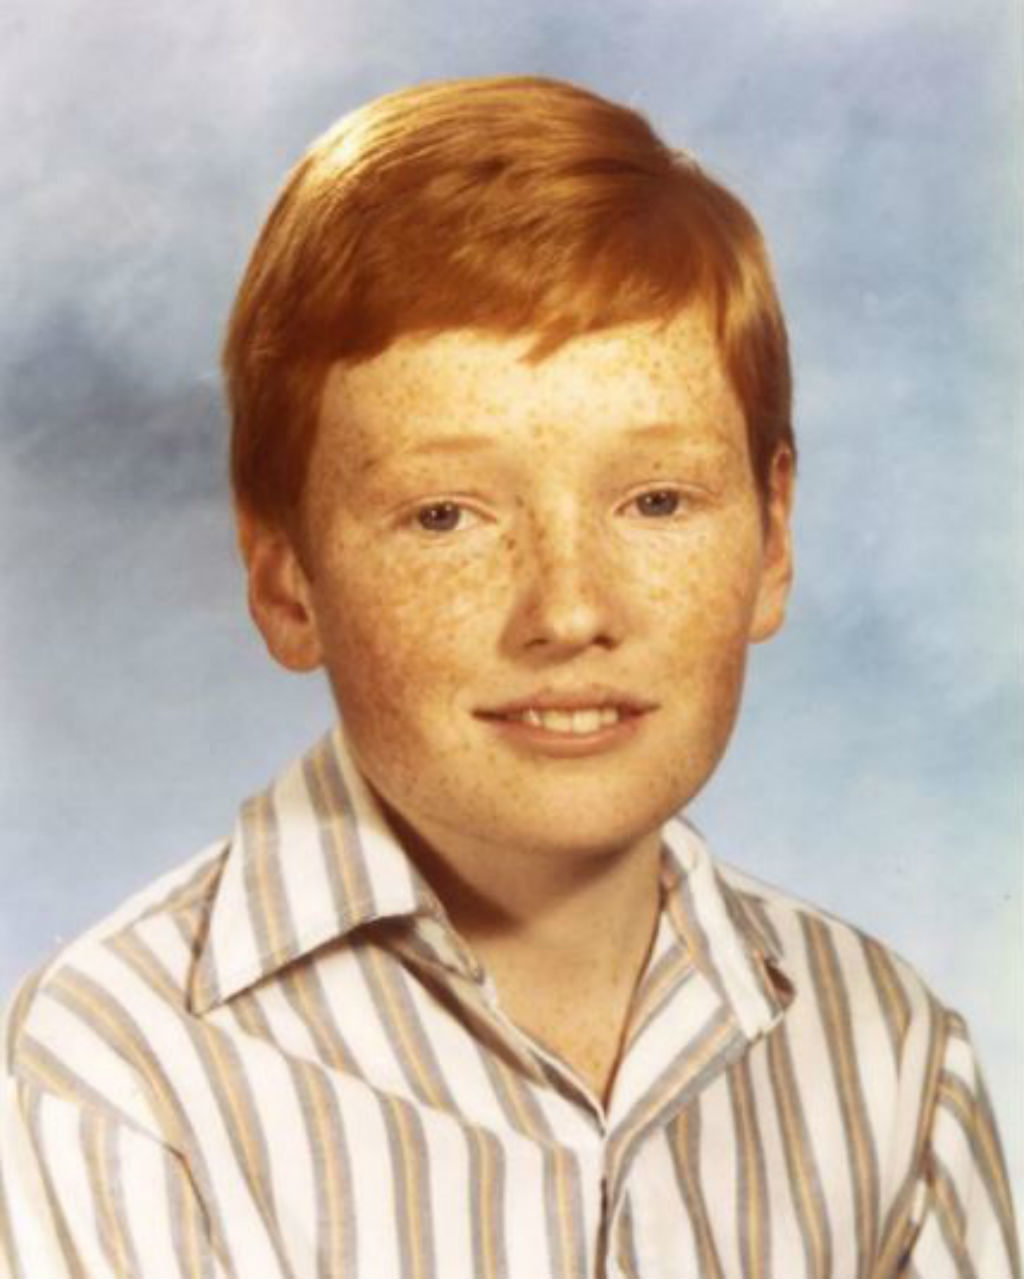 Young Conan O'Brien